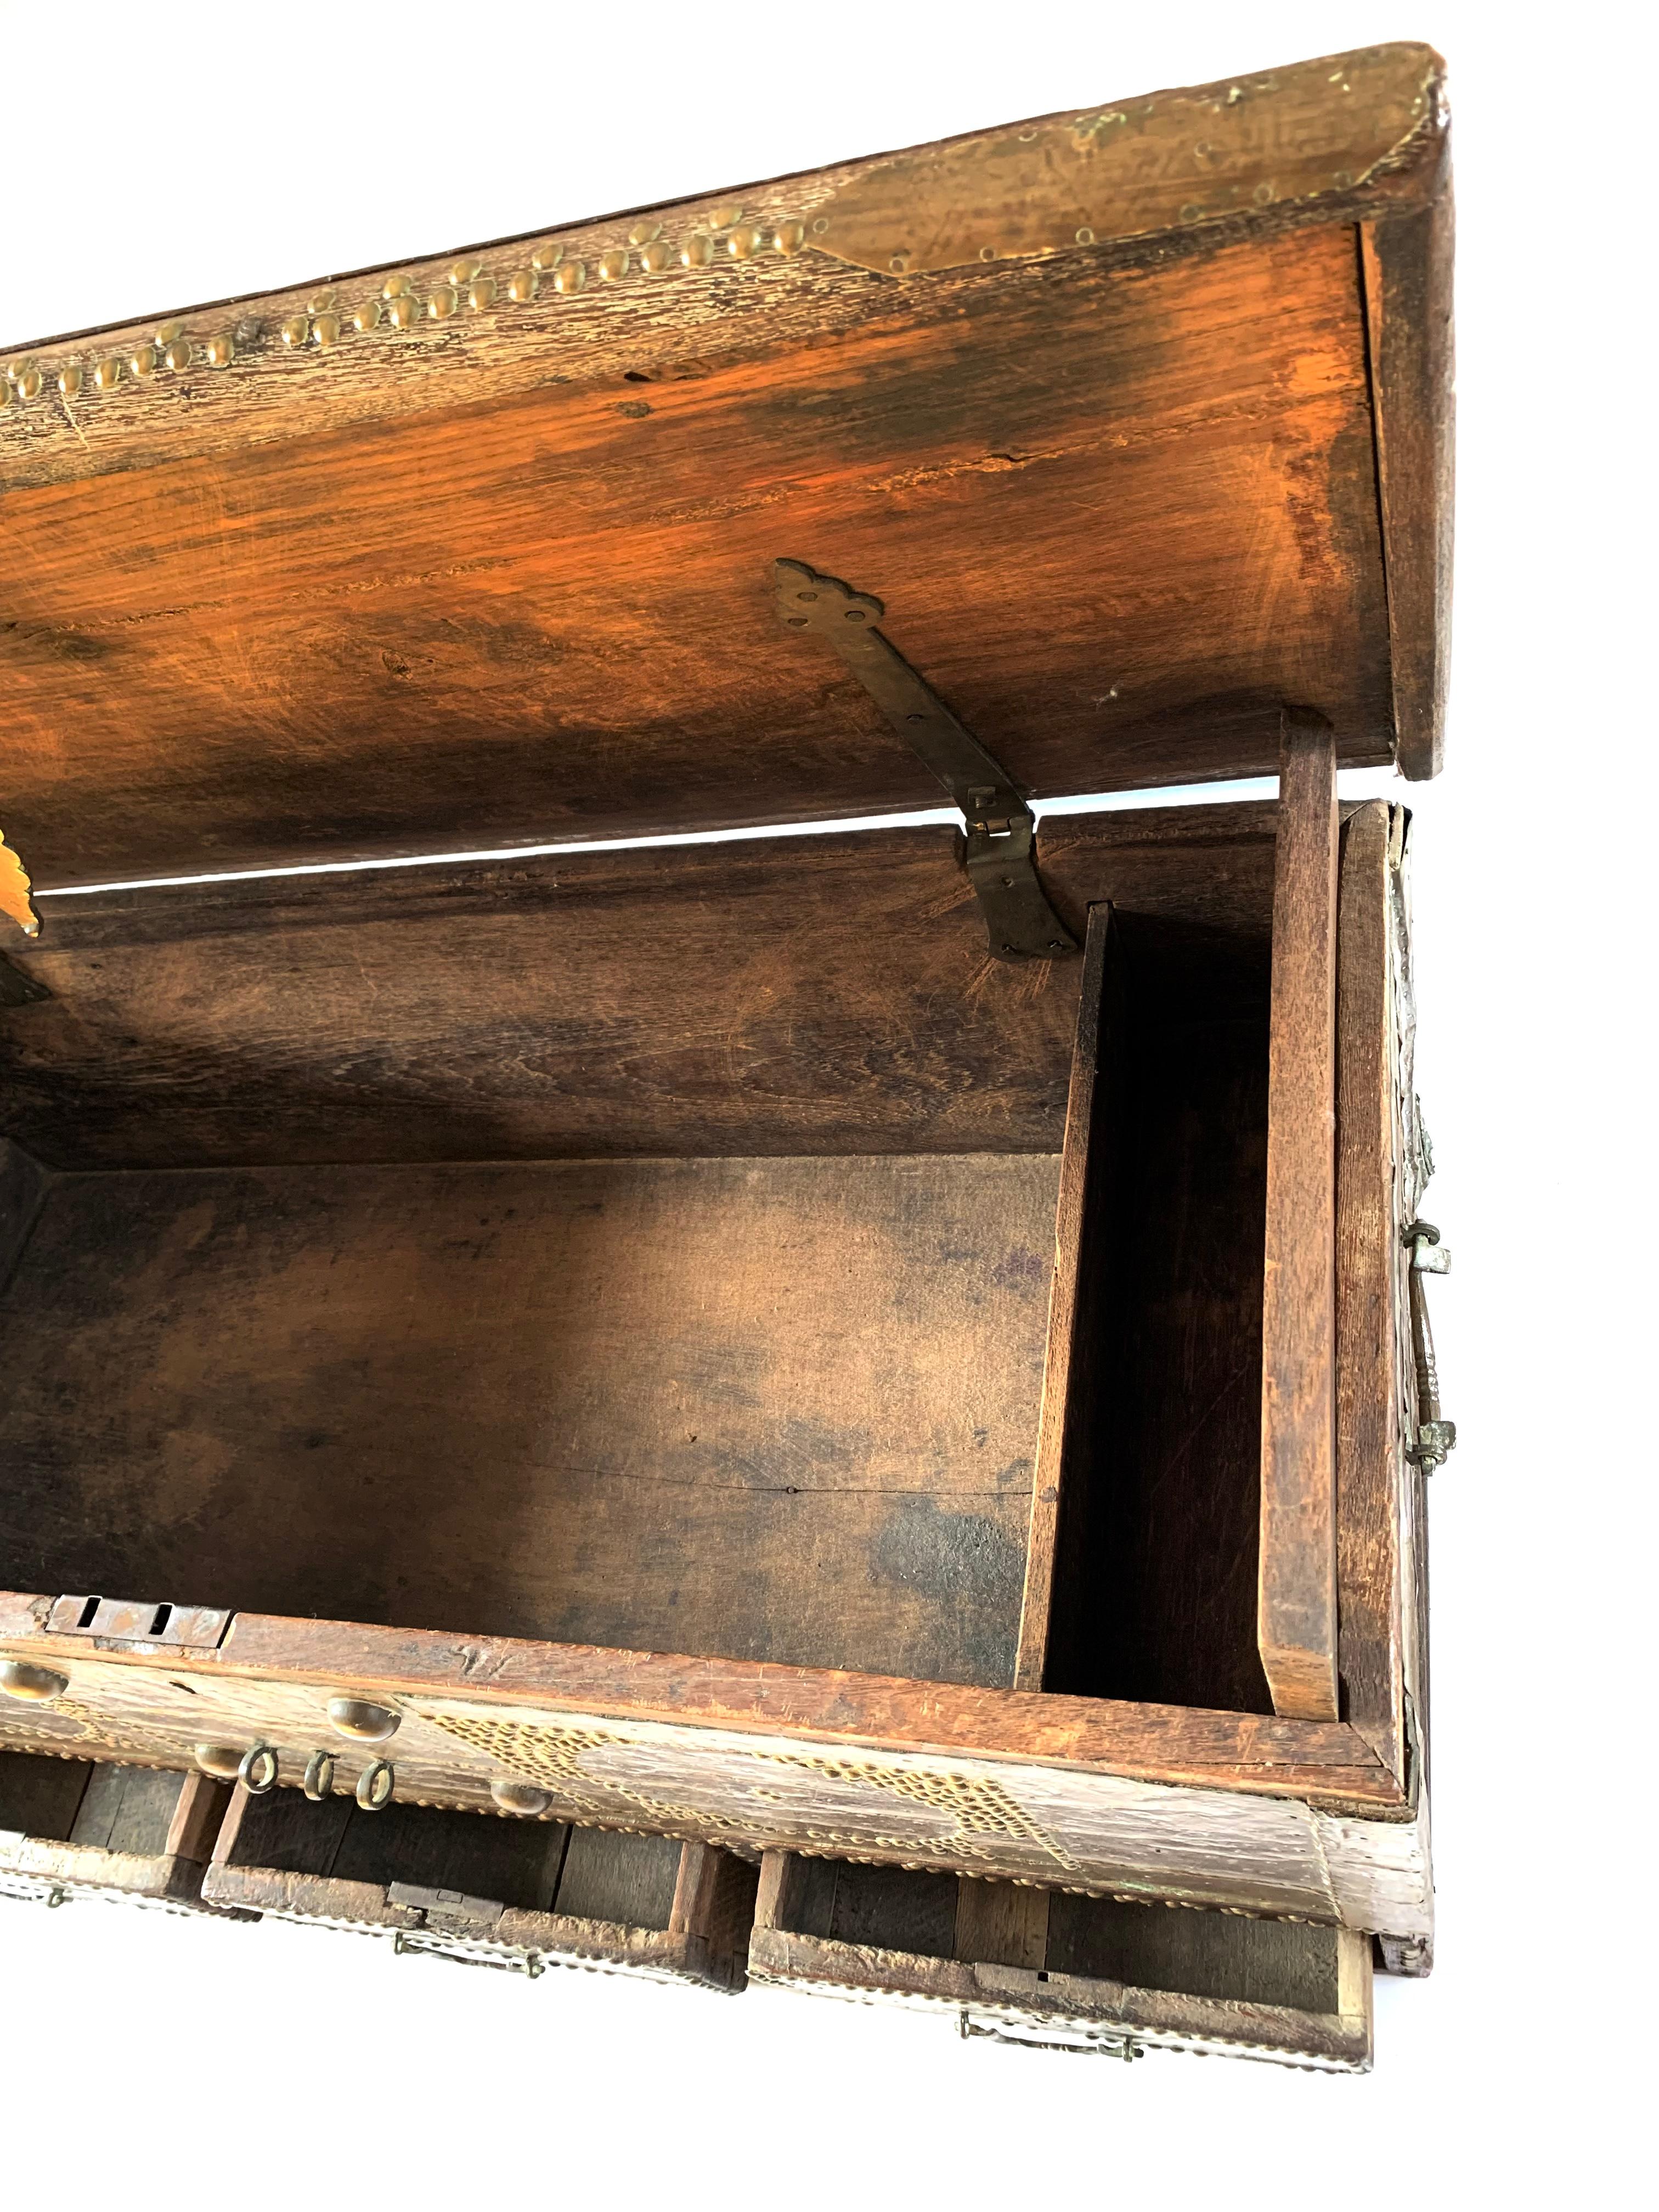 Rare commode de Zanzibar du milieu du XIXe siècle, équipée d'une feuille de bronze et de clous en laiton dans un design étonnant sur le devant, les côtés et le dessus. Les coffres à dot ont une histoire bien documentée en tant qu'icônes de